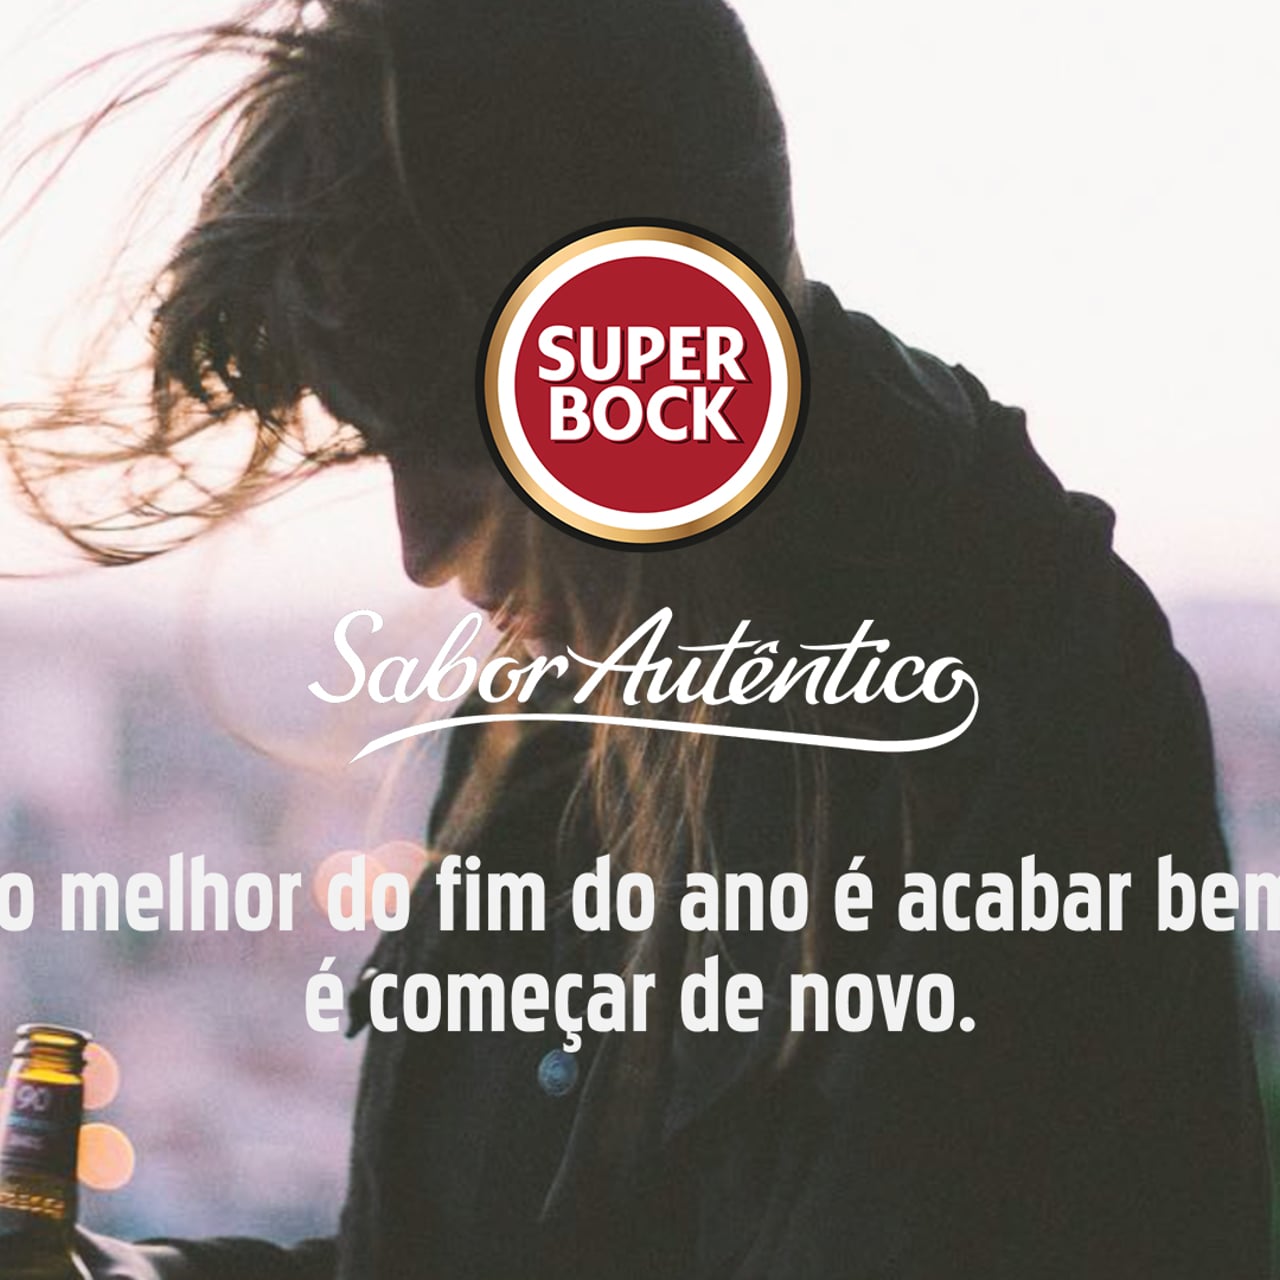 Super Bock - Filme do Ano